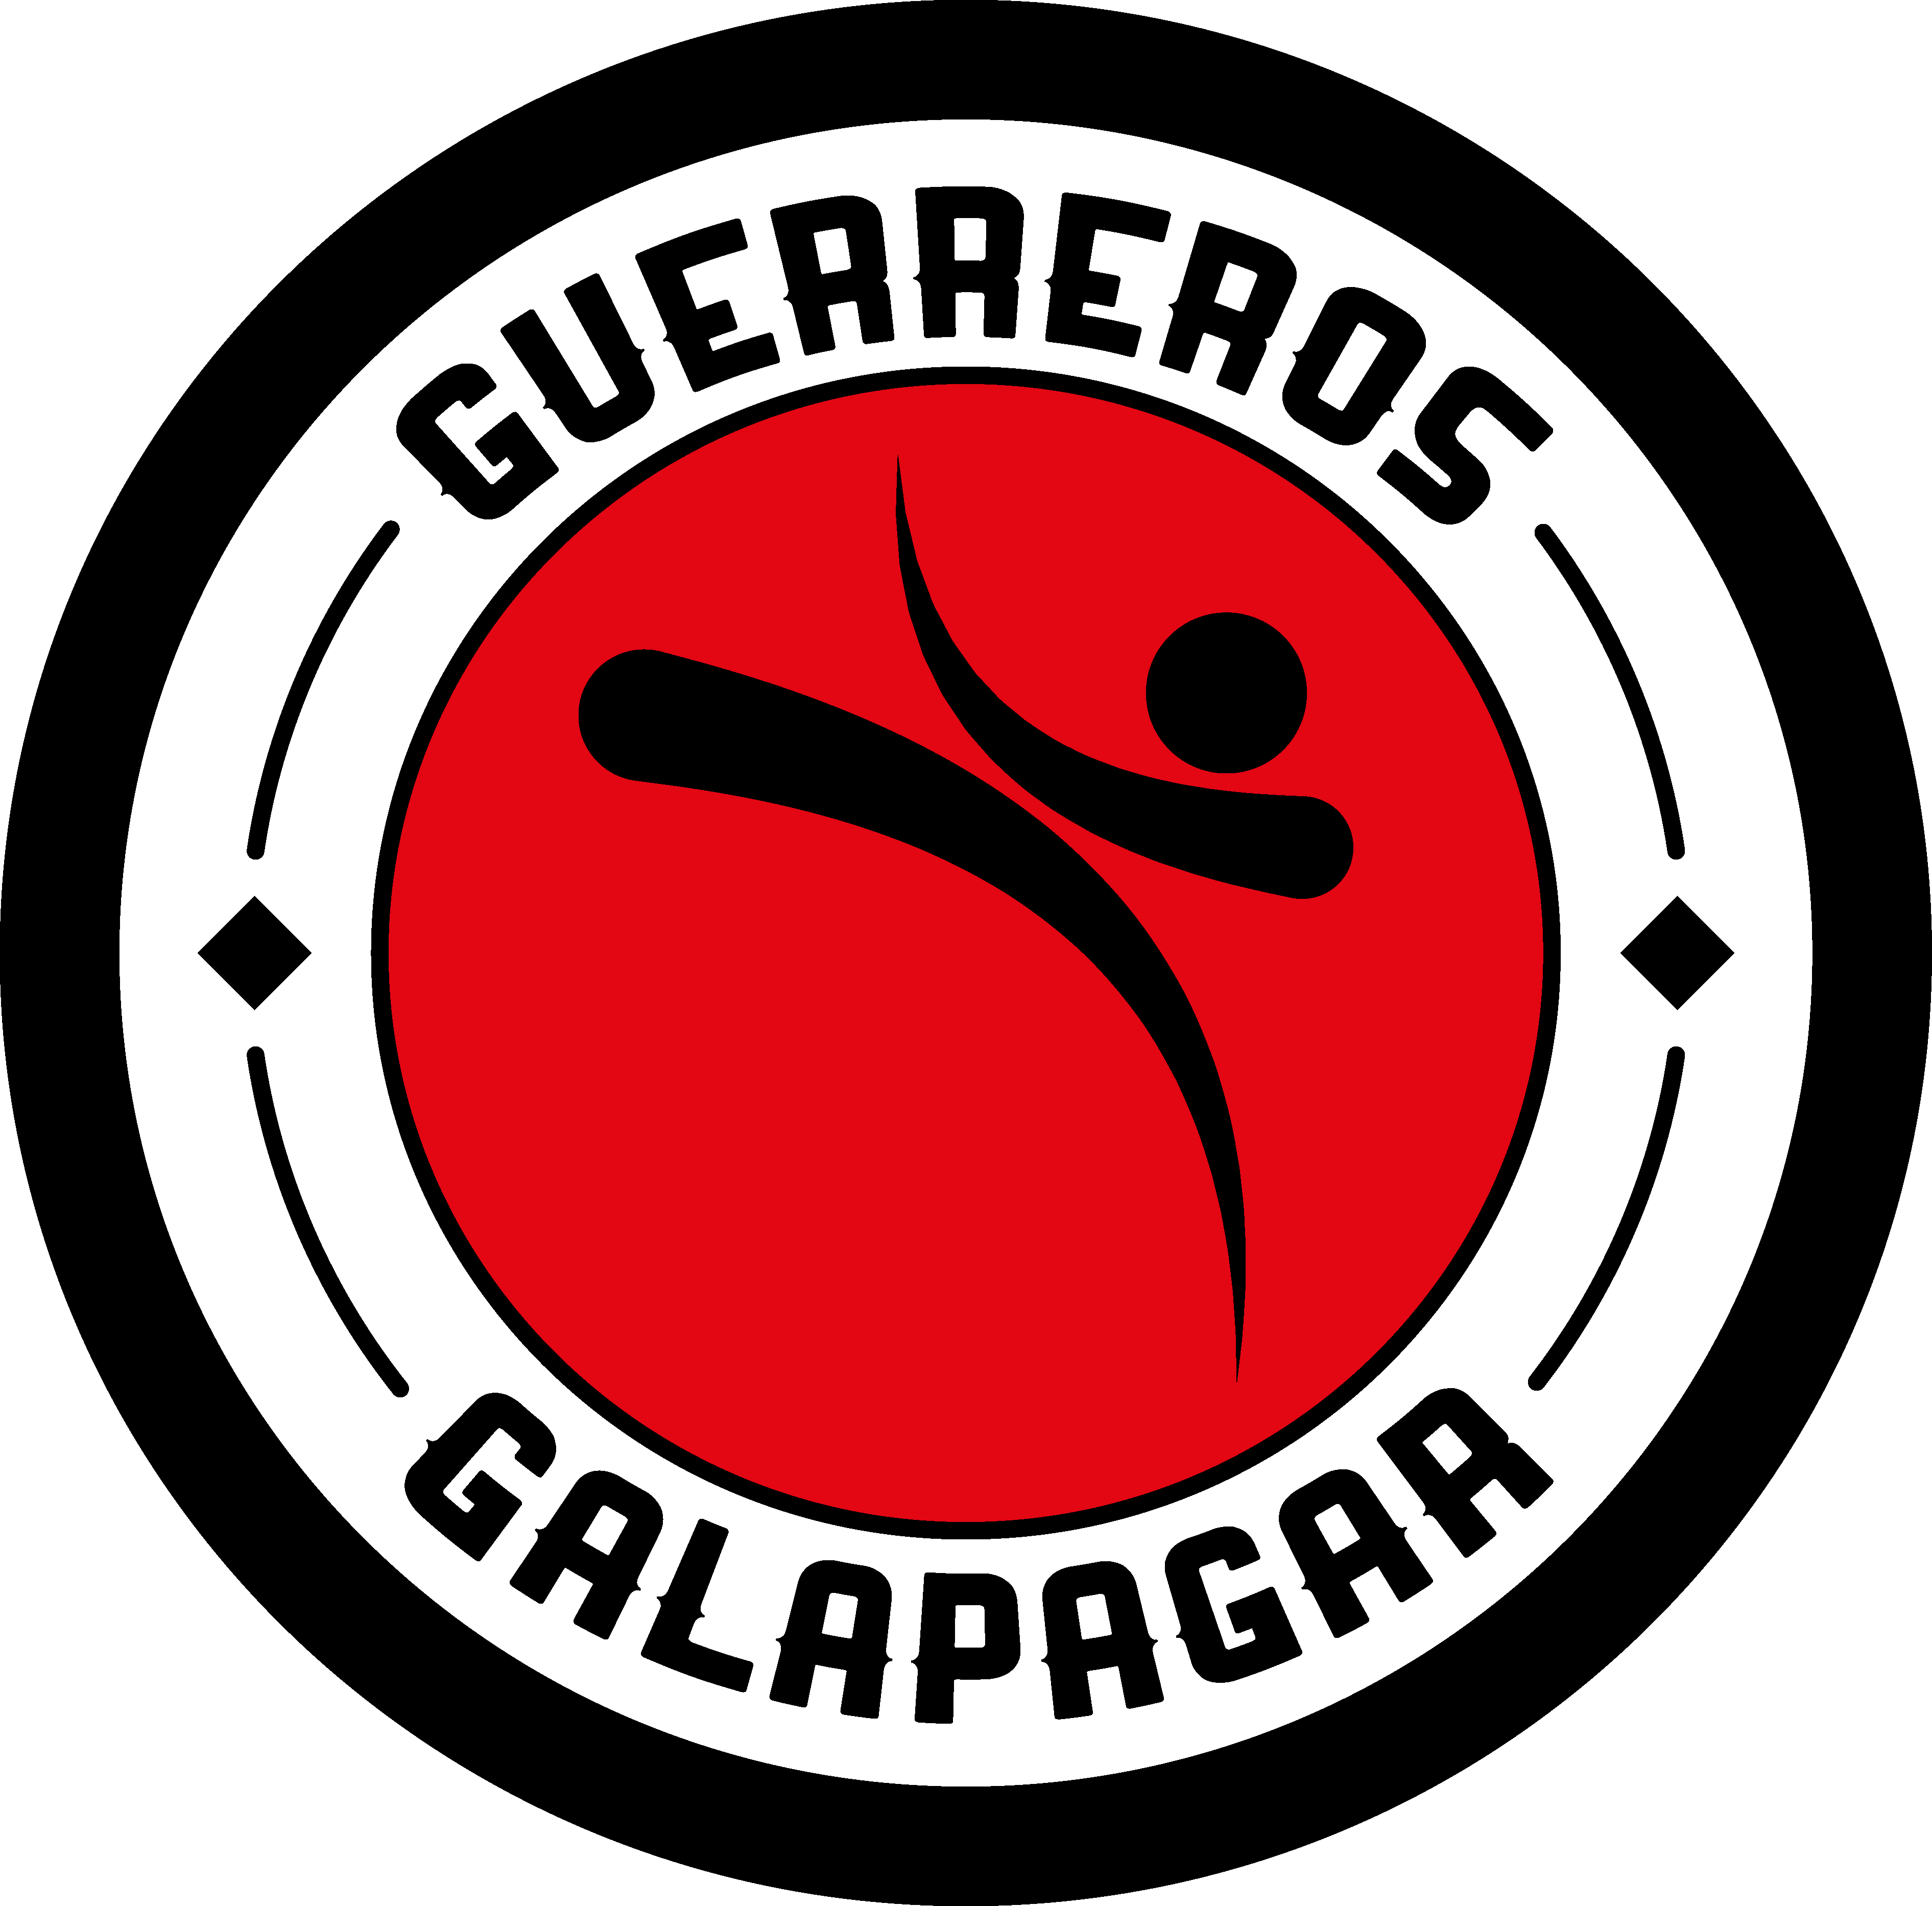 Guerreros Galapagar